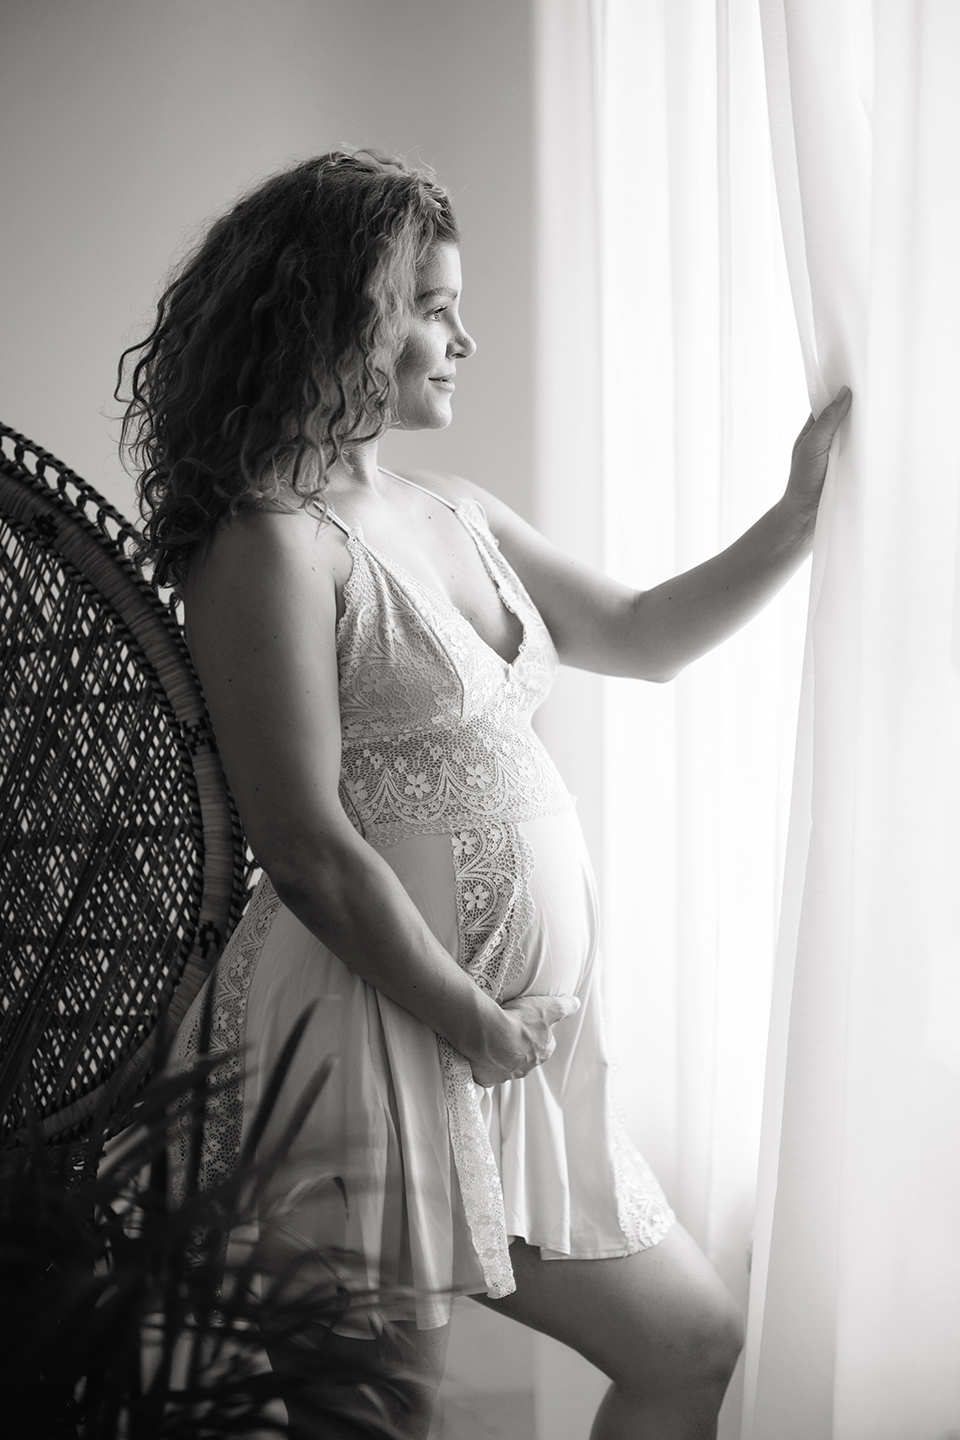 Schwangerschaftsfotograf